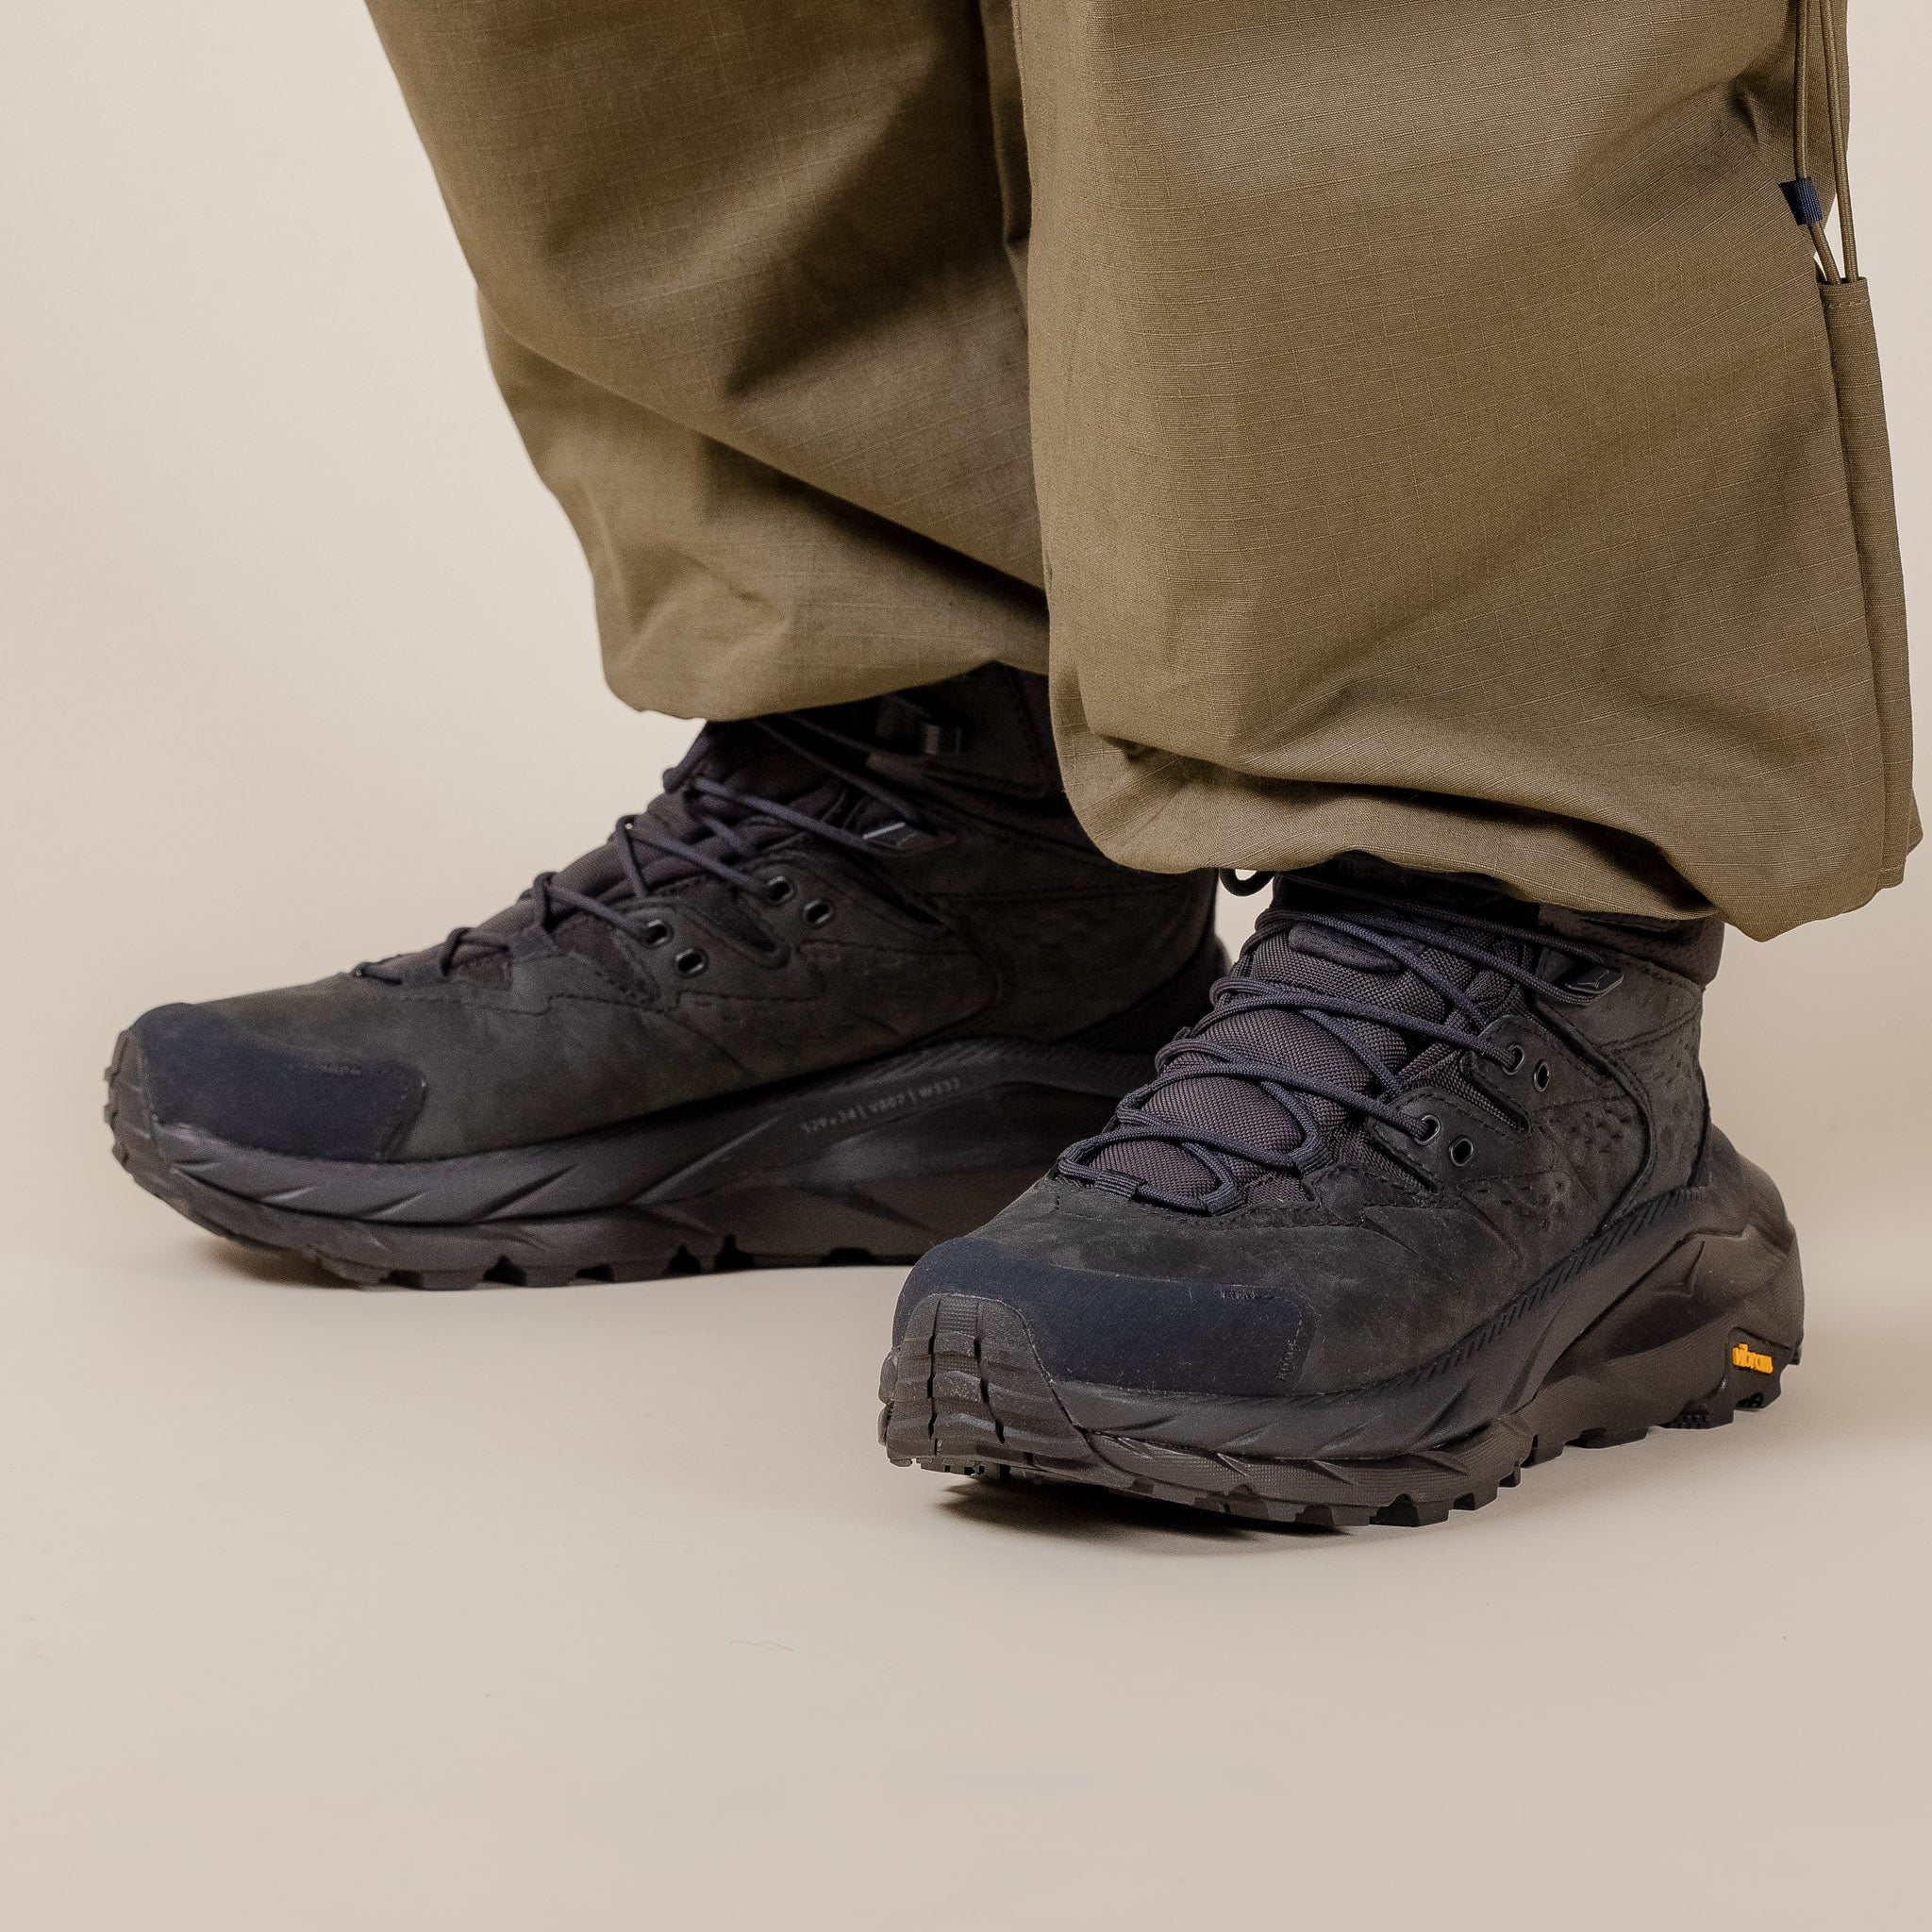 Hoka - Kaha 2 GORE-TEX Hiking Boots - Black